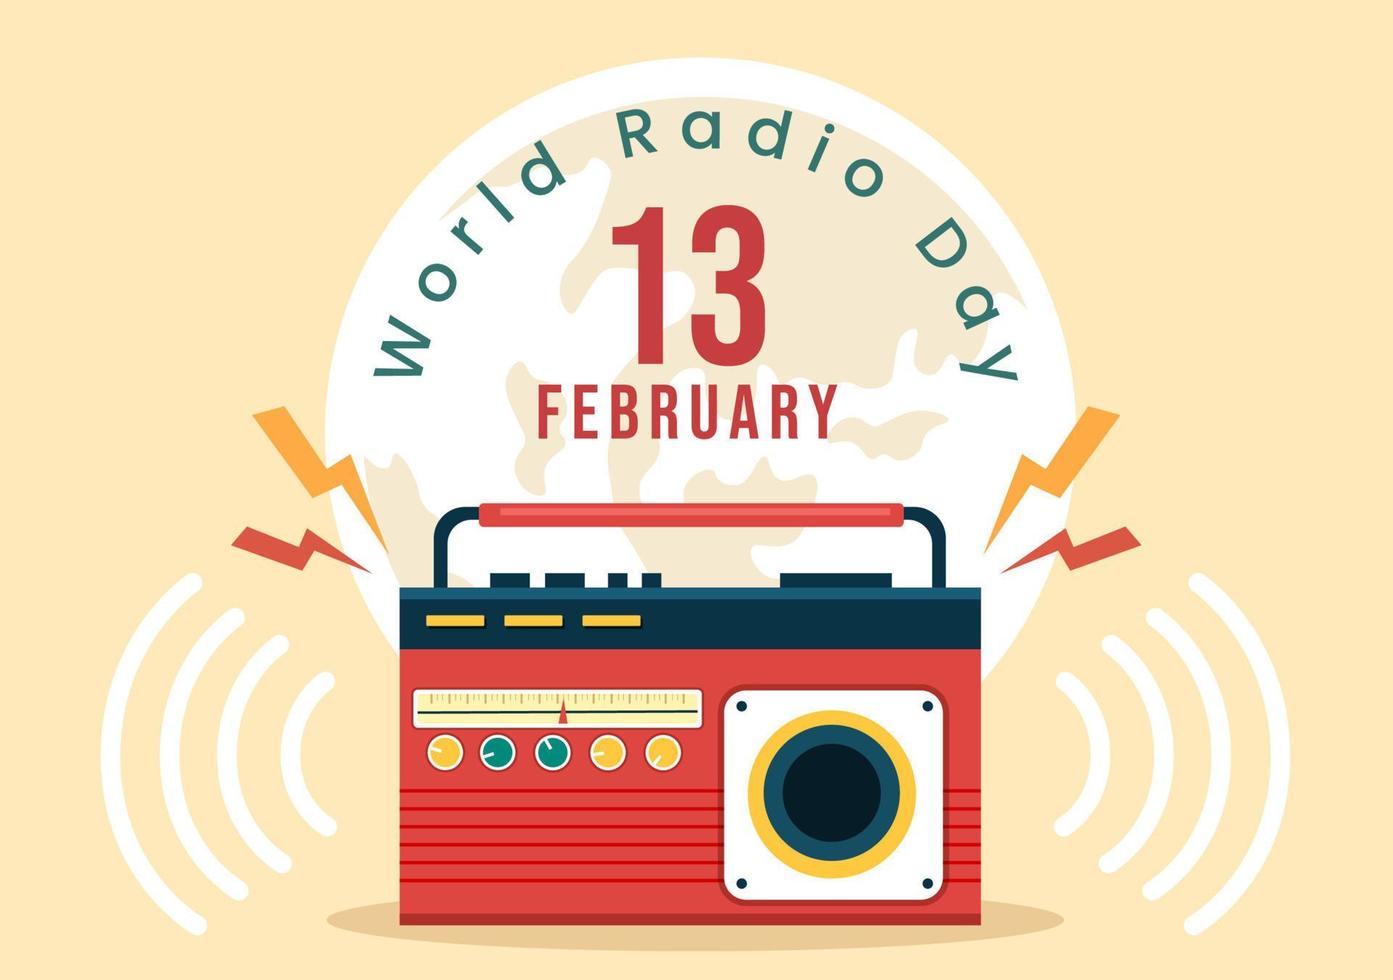 journée mondiale de la radio le 13 février d'idée pour le modèle de page de destination, la bannière et l'affiche dans un fond de dessin animé de style plat illustration dessinée à la main vecteur